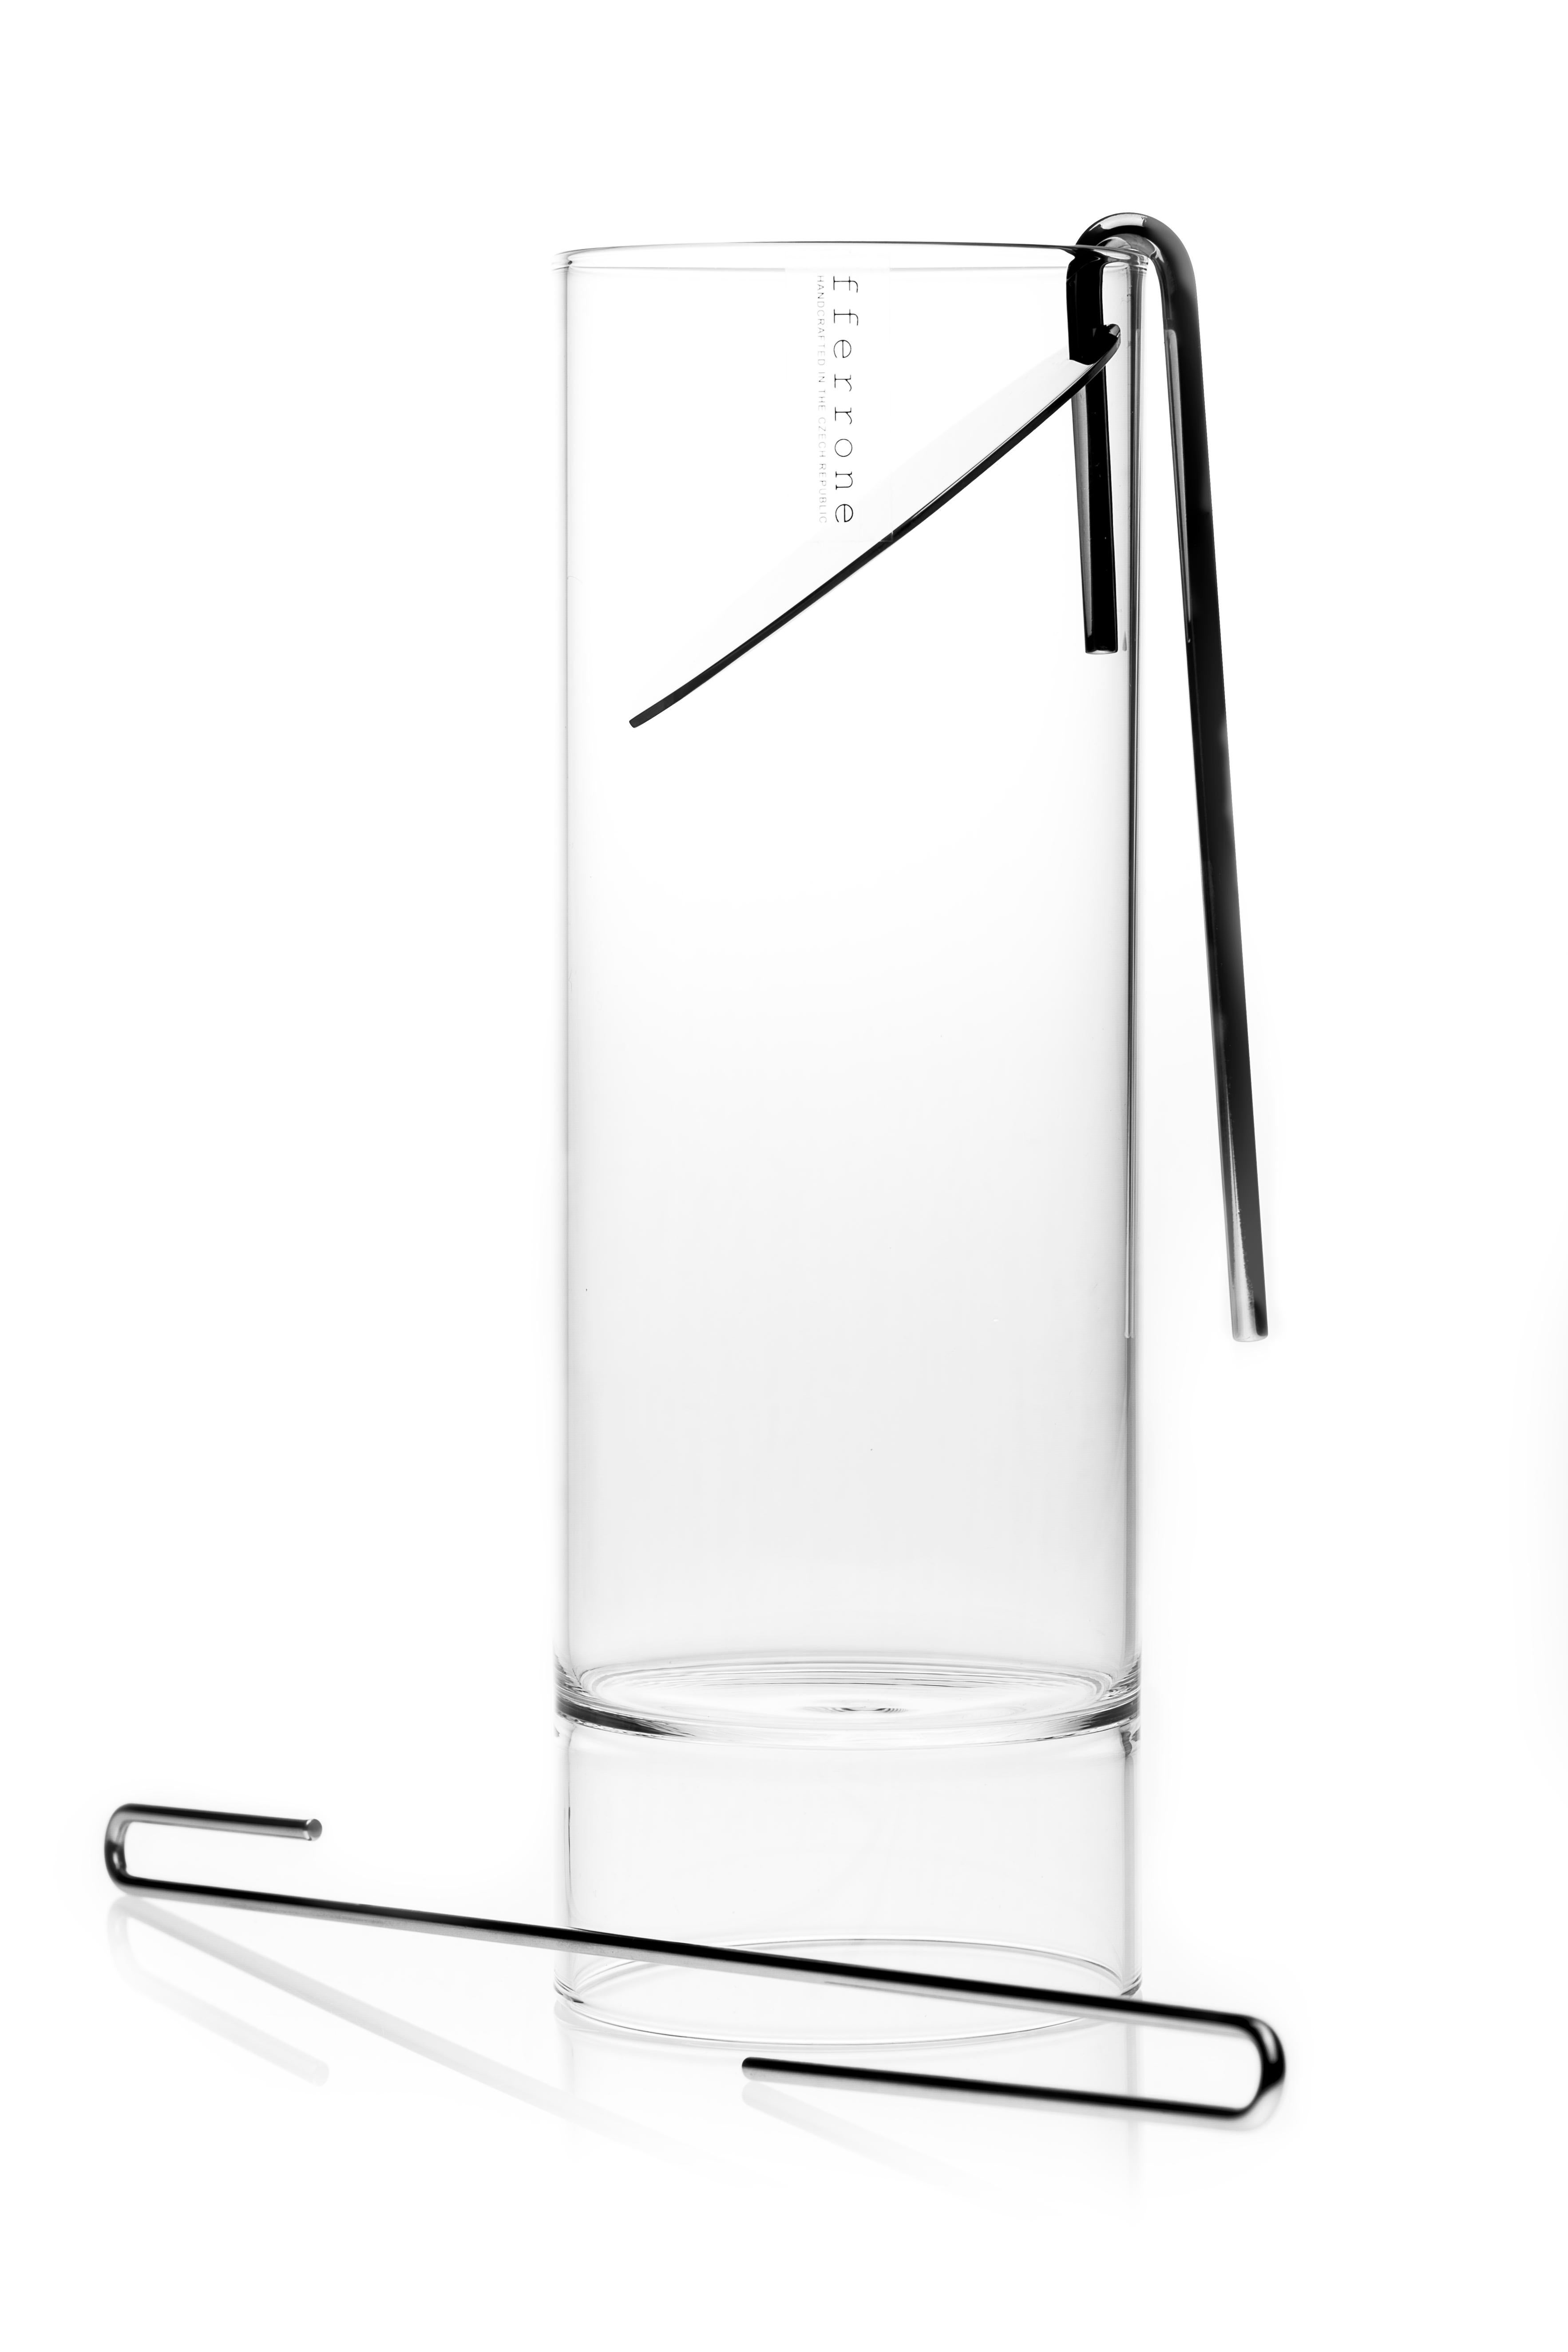 L'ensemble de la collection minimale Revolution en verre tchèque contemporain comprend une carafe à cocktail, une passoire, un bâtonnet mélangeur et huit verres à Martini Rocks à double embout.

D'une simplicité frappante dans sa forme, la